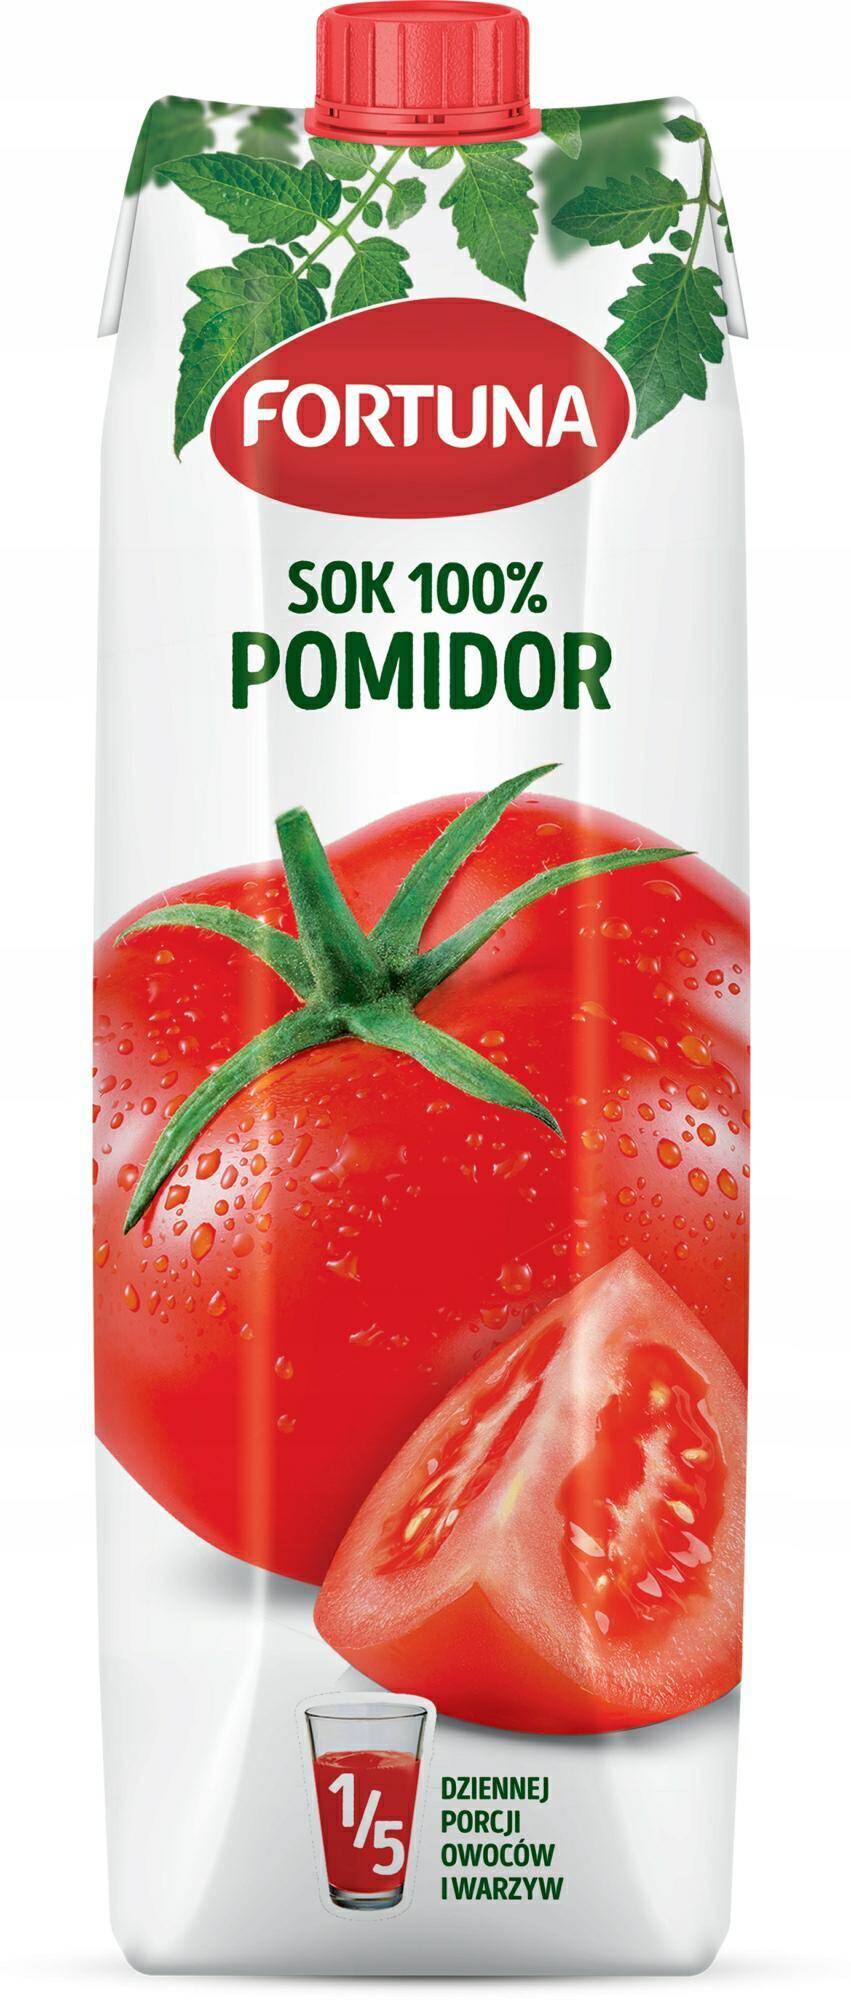 FORTUNA sok 100% pomidor 1l *12 (Zdjęcie 1)